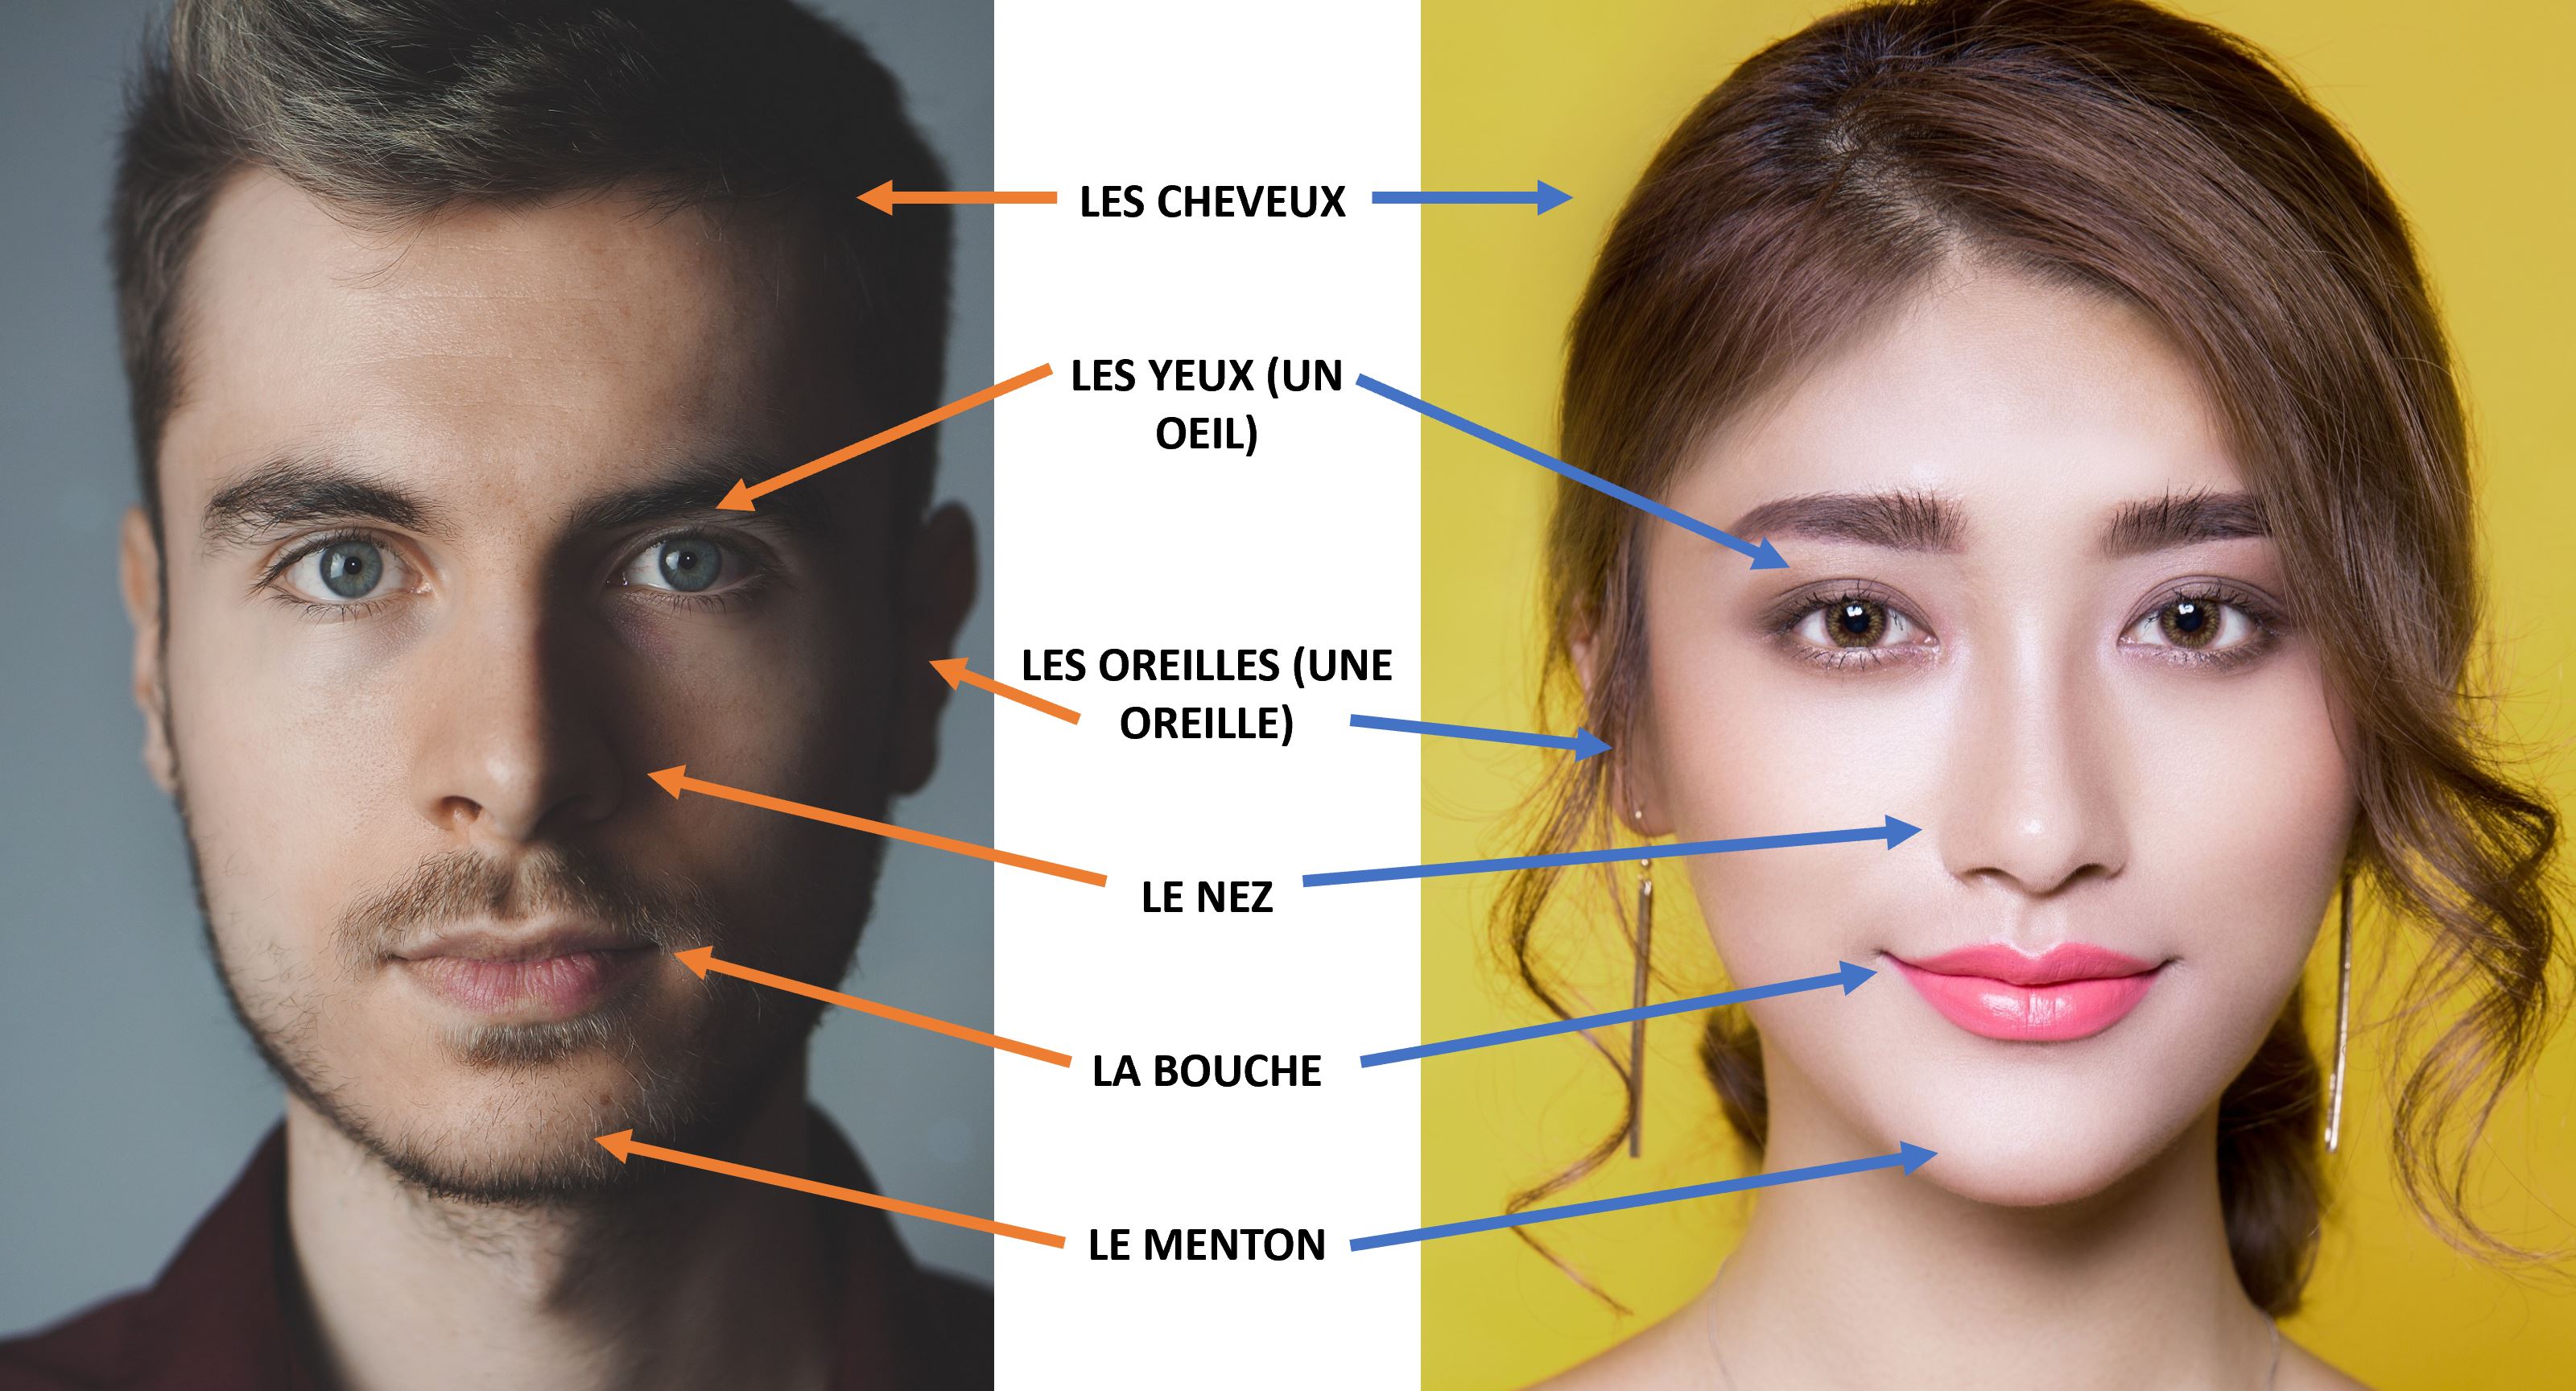 Les Cheveux（头发），Les Yeux（Un Oeil）（眼睛/眼睛），Les Oreilles（Une Oreille）（耳朵/耳朵），Le Nez（鼻子），La Bouche（嘴），Le Menton（Chin）（下巴）